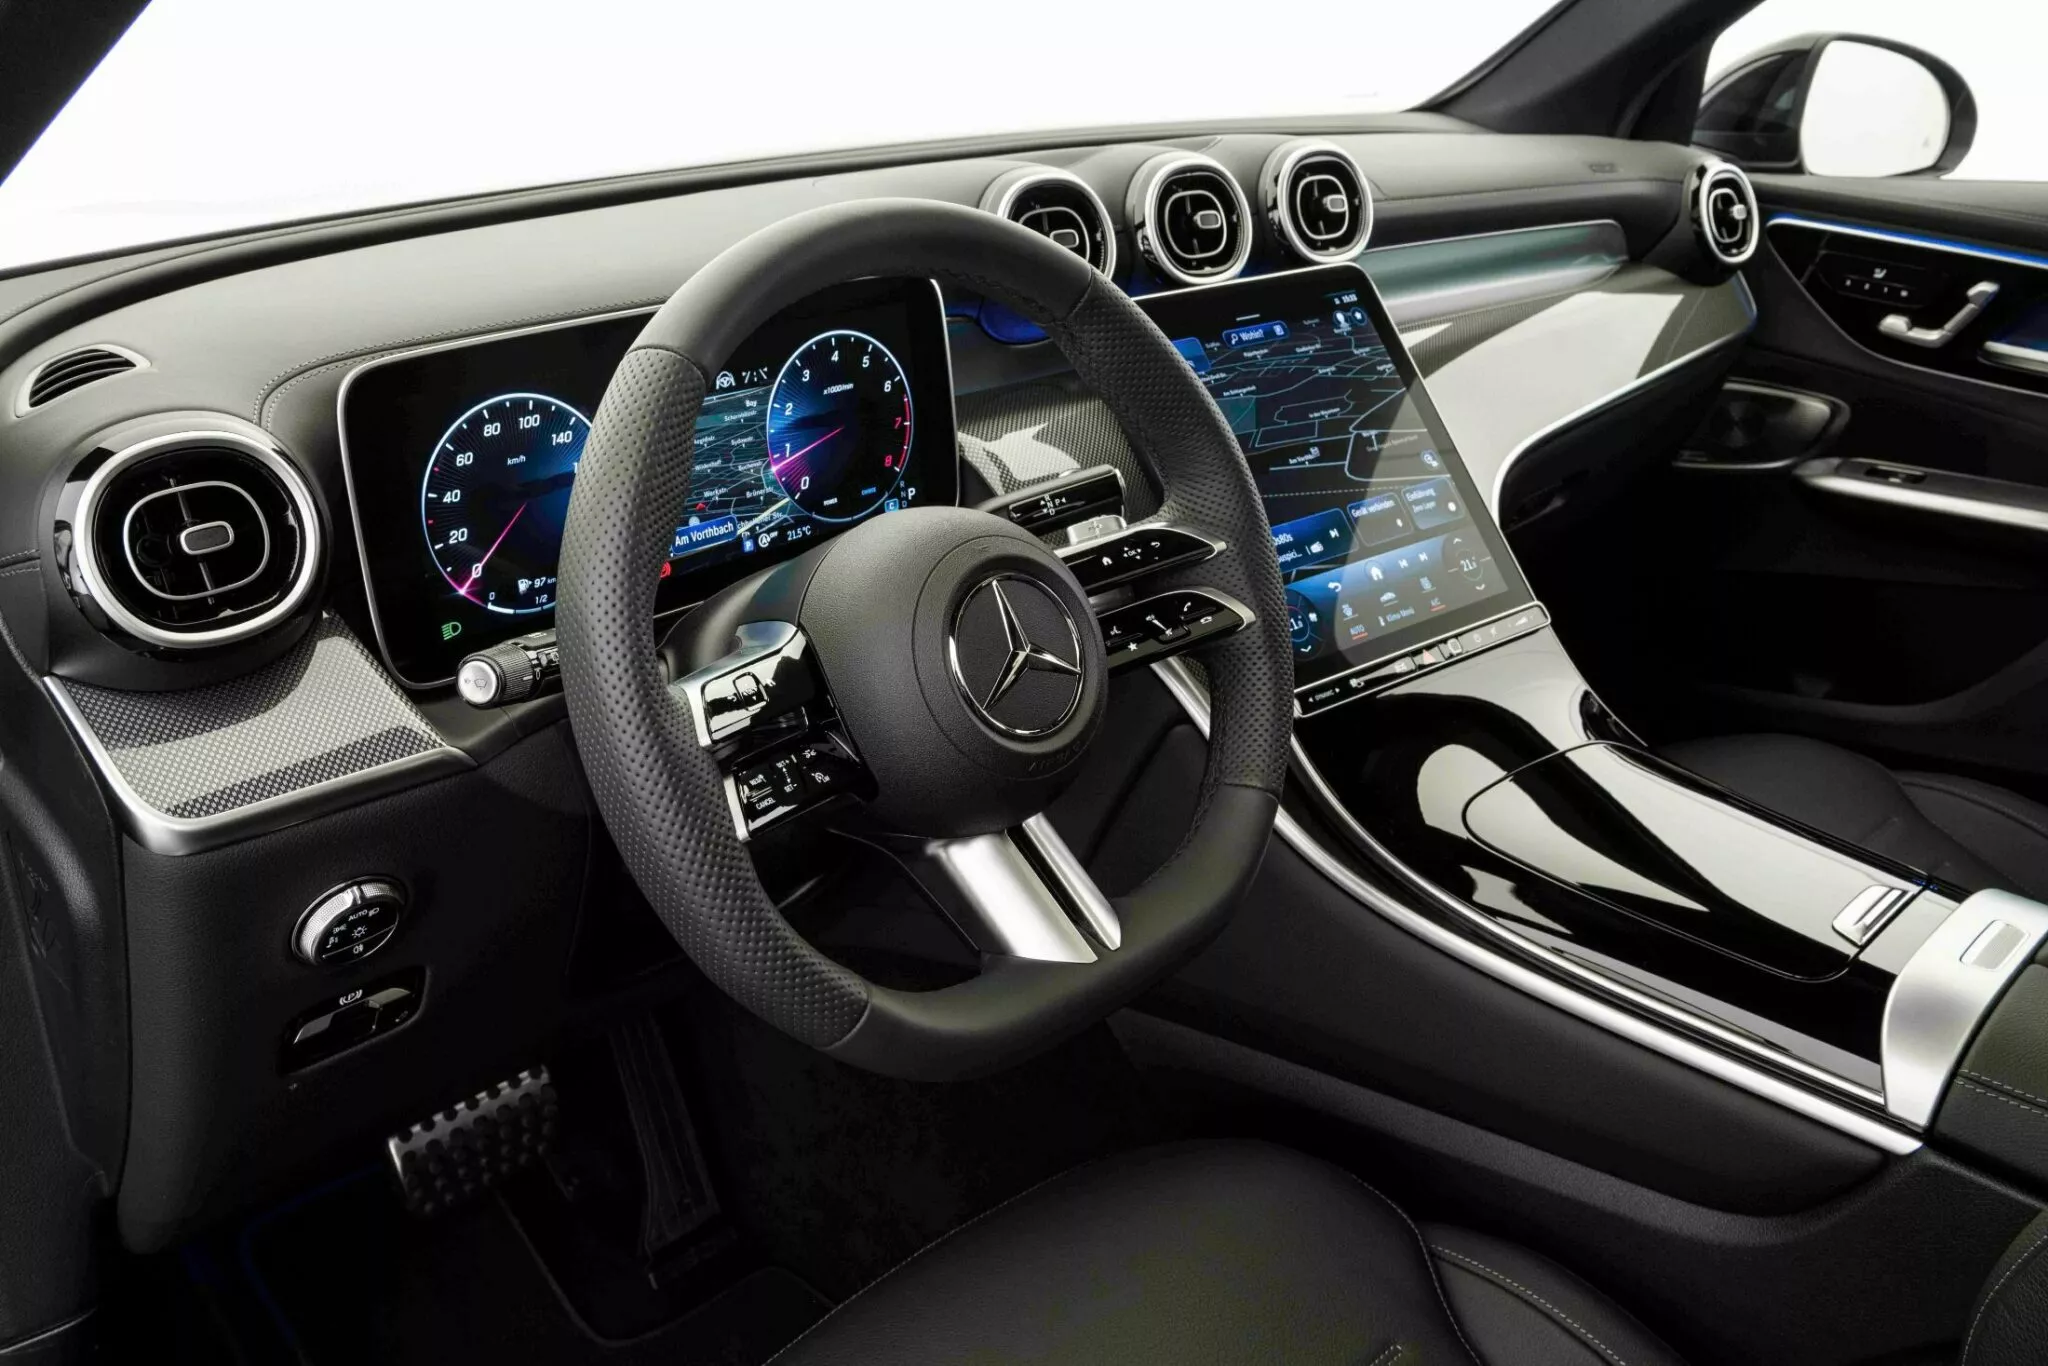 Mercedes-Benz GLC 300 bản độ Brabus: Mạnh mẽ hơn, thể thao hơn mercedes-benz-glc-300-4matic-brabus-studio-19-2048x1366.webp